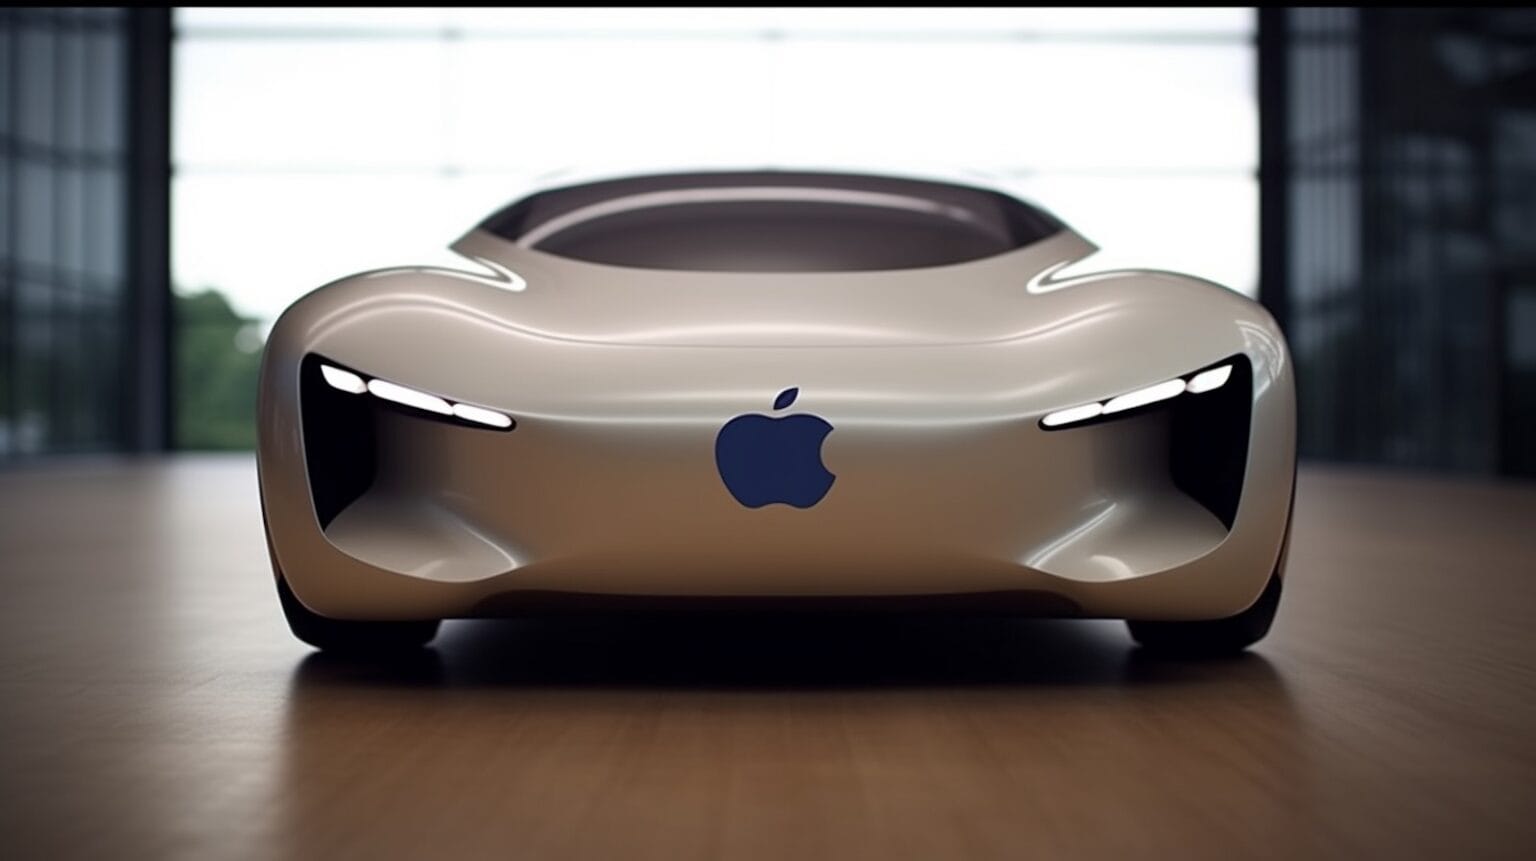 Az Apple autó elbukott, de a projekt nem volt eredménytelen - 1. rész